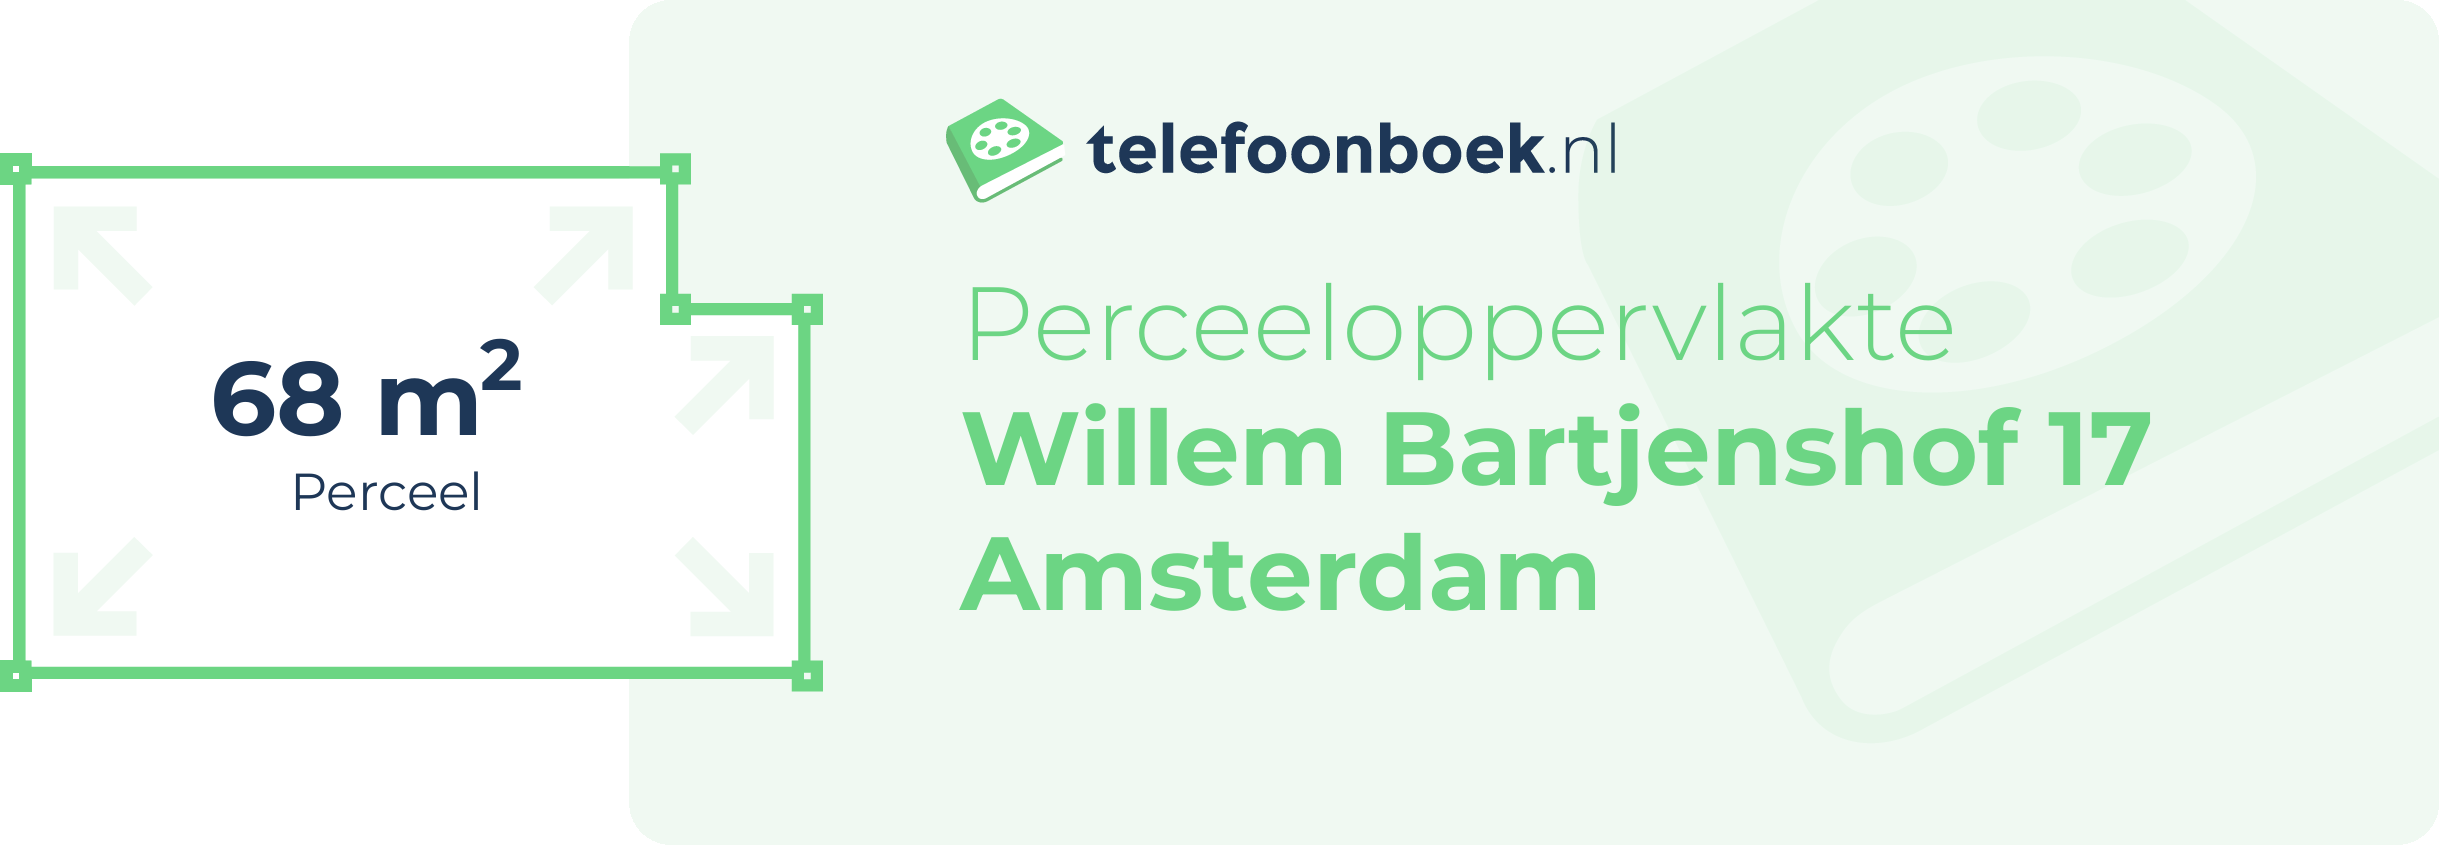 Perceeloppervlakte Willem Bartjenshof 17 Amsterdam